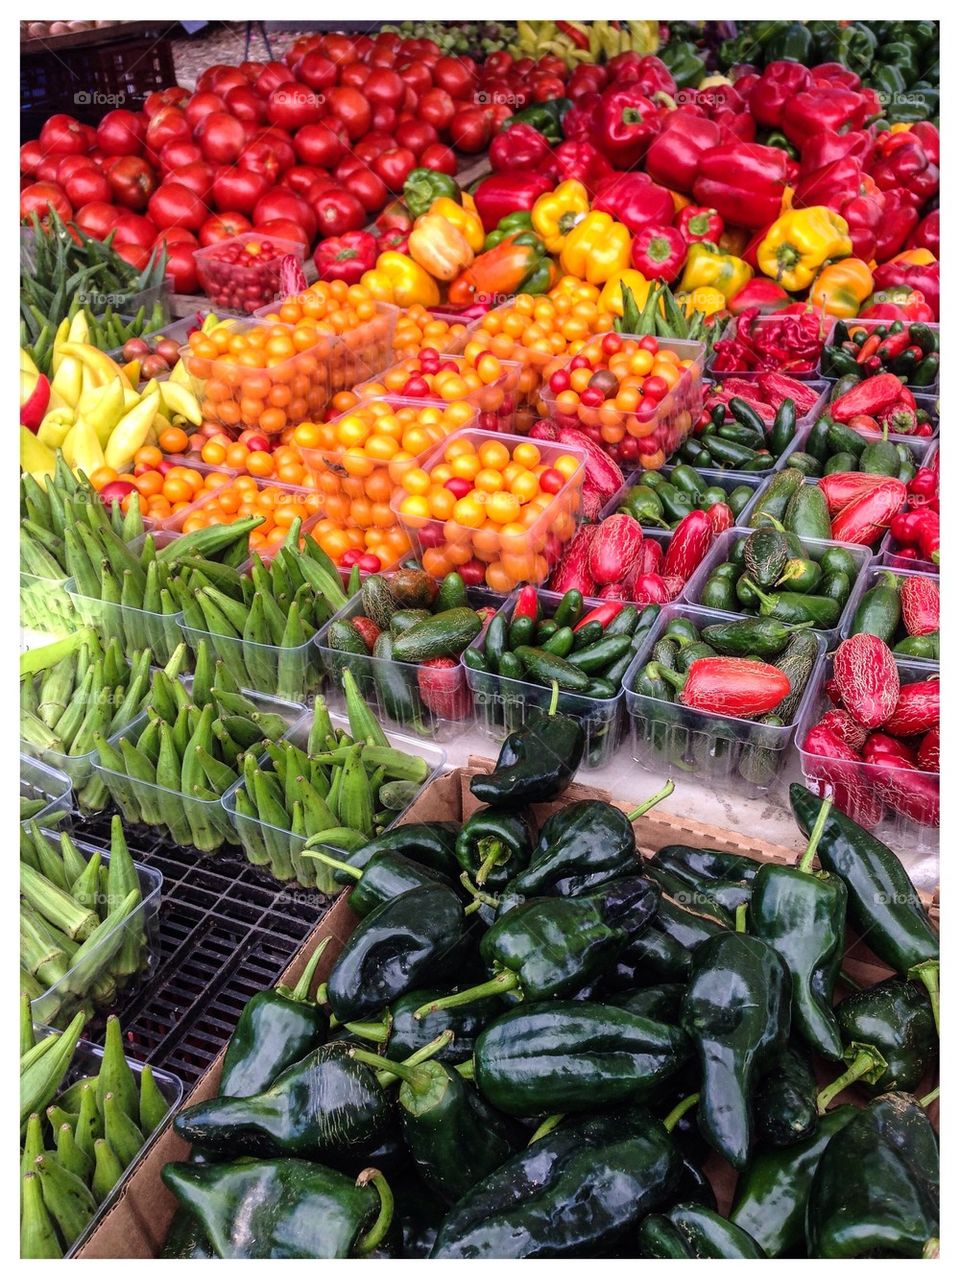 Farmer's Market Vegetables 2